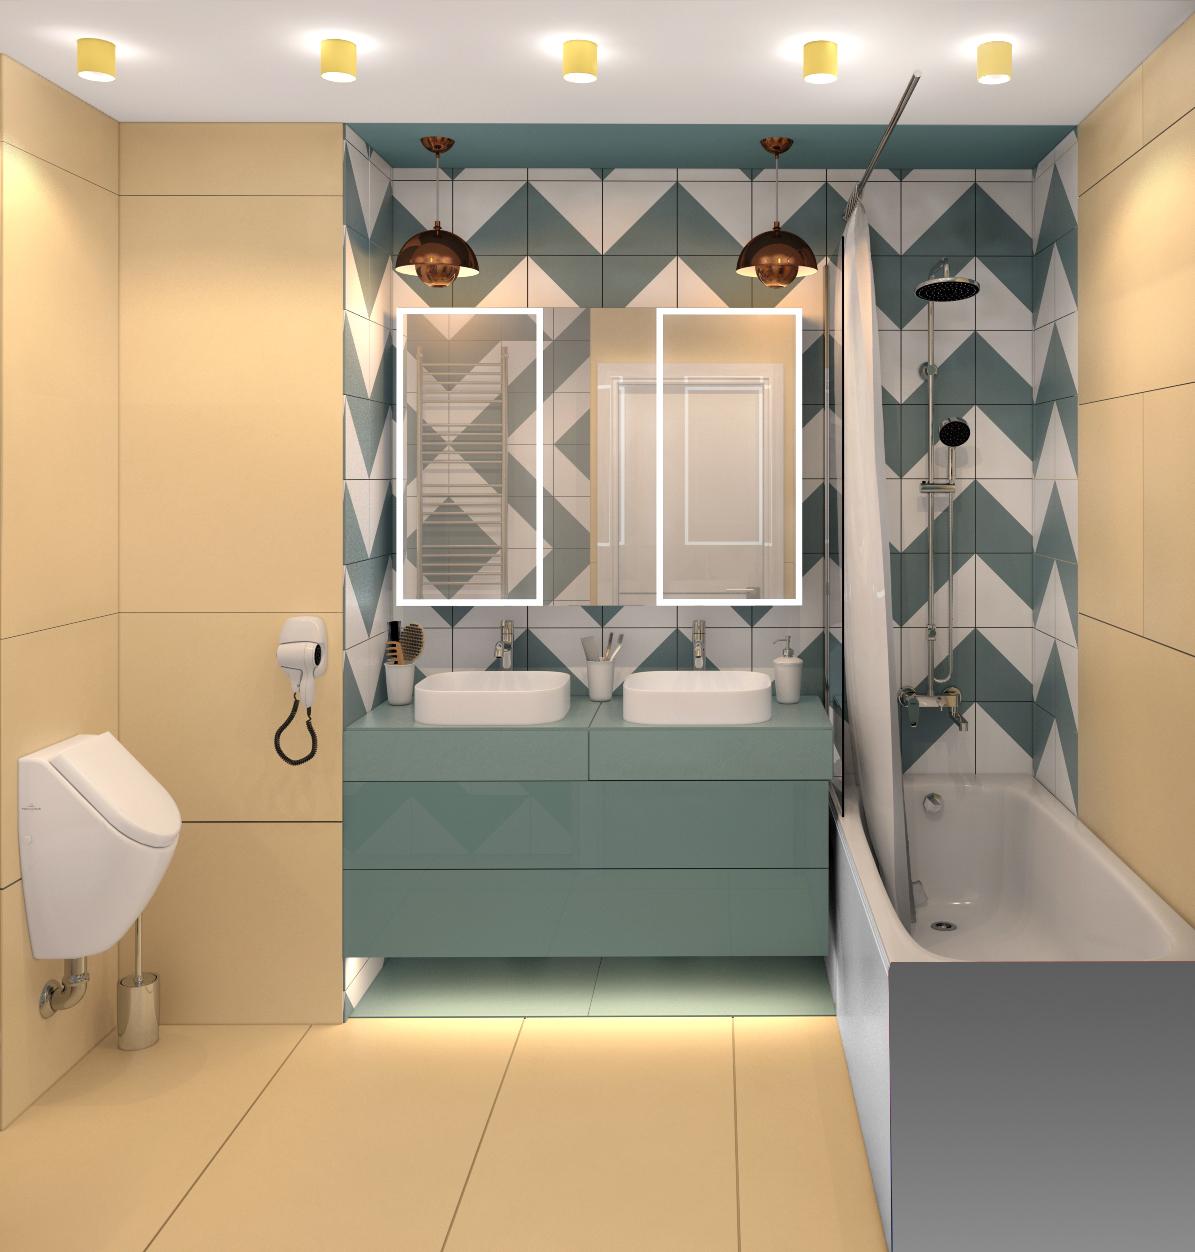 Интерьер ванной с подсветкой настенной и подсветкой светодиодной